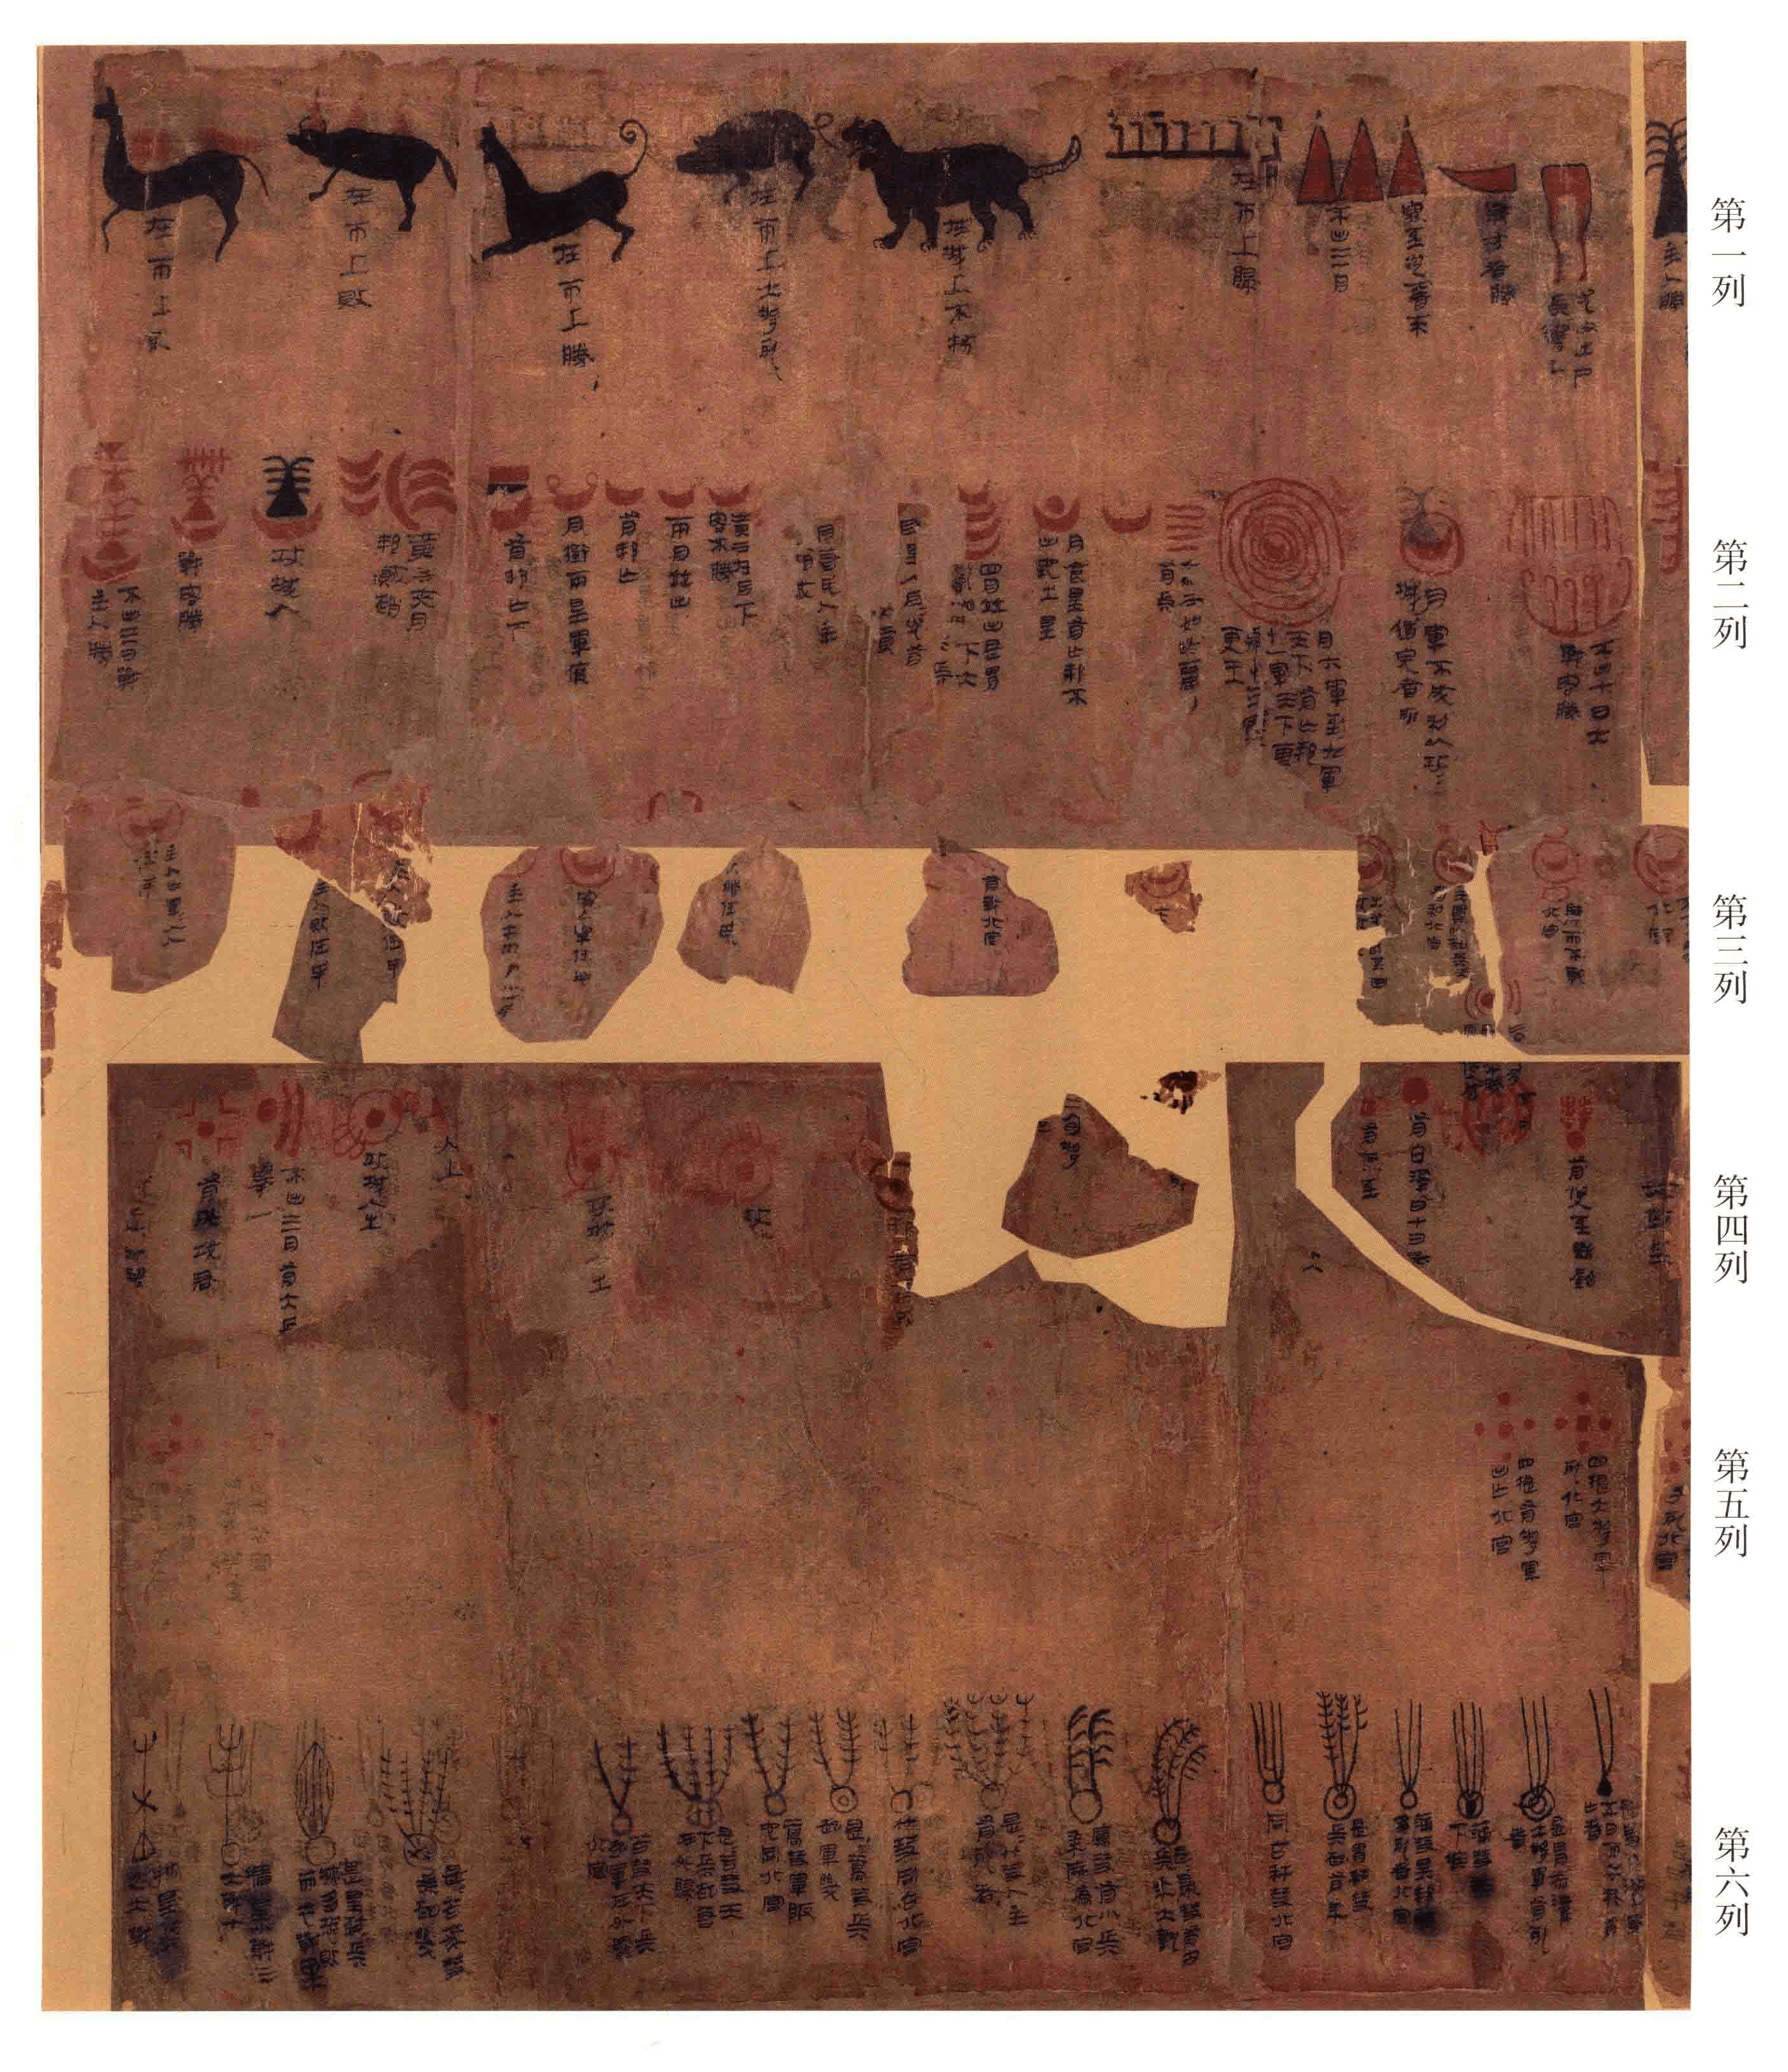 上世纪 70 年代,湖南长沙马王堆三号汉墓出土了一幅帛书《天文气象杂